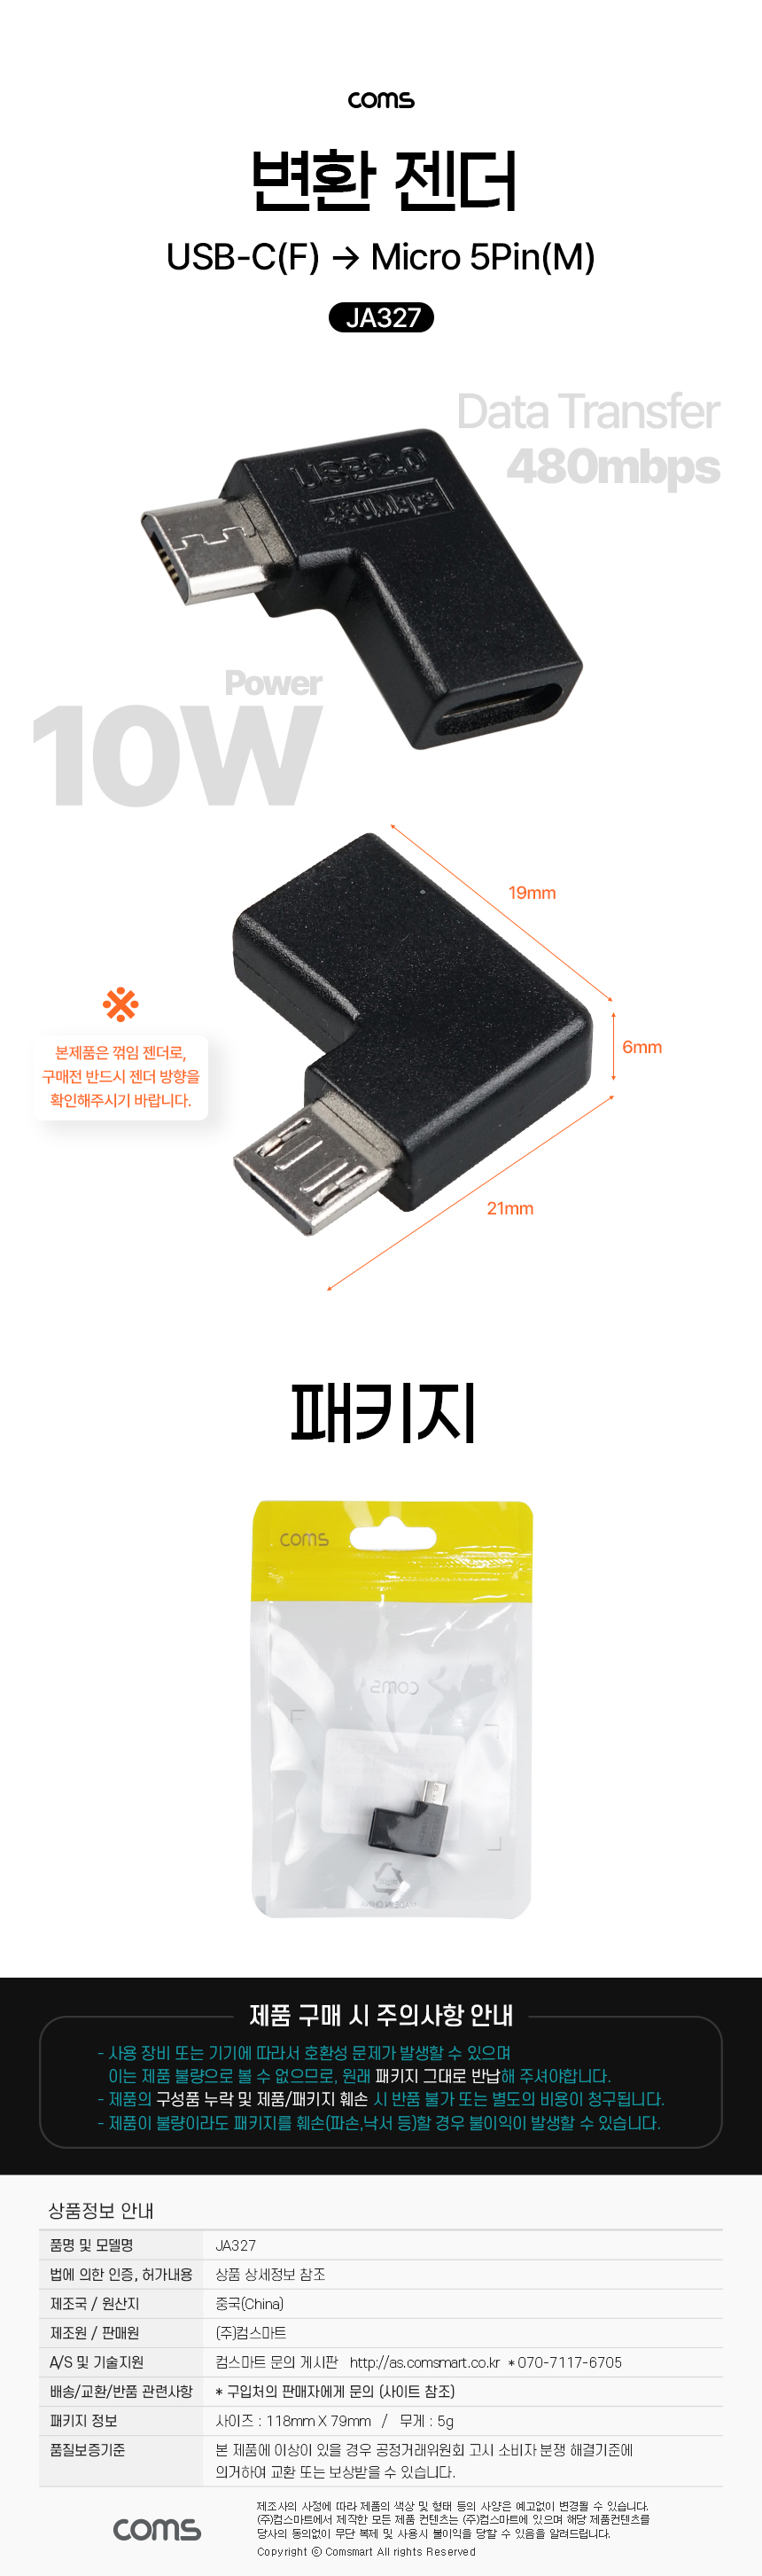 USB 3.1 C타입 type C to 마이크로 5핀 Micro 5Pin 변환 젠더 좌우상향90도 꺾임 10W